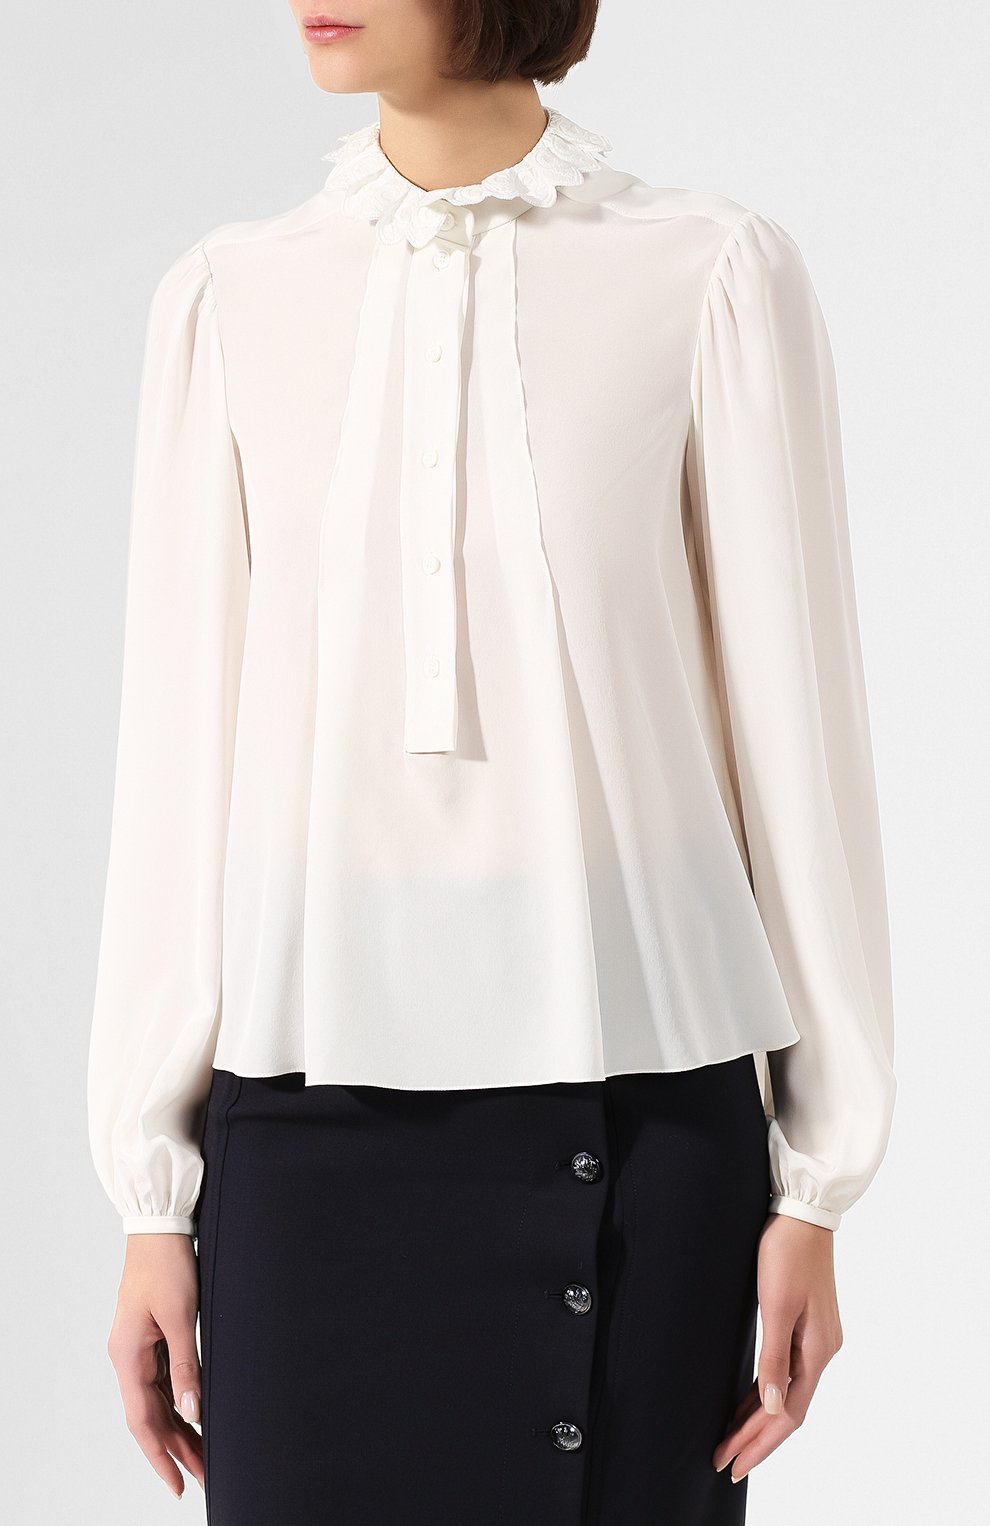 Женская шелковая блузка CHLOÉ белого цвета, арт. CHC19WHT47004 | Фото 3 (Материал внешний: Шелк; Рукава: Длинные; Принт: Без принта; Длина (для топов): Стандартные; Женское Кросс-КТ: Блуза-одежда; Статус проверки: Проверена категория)